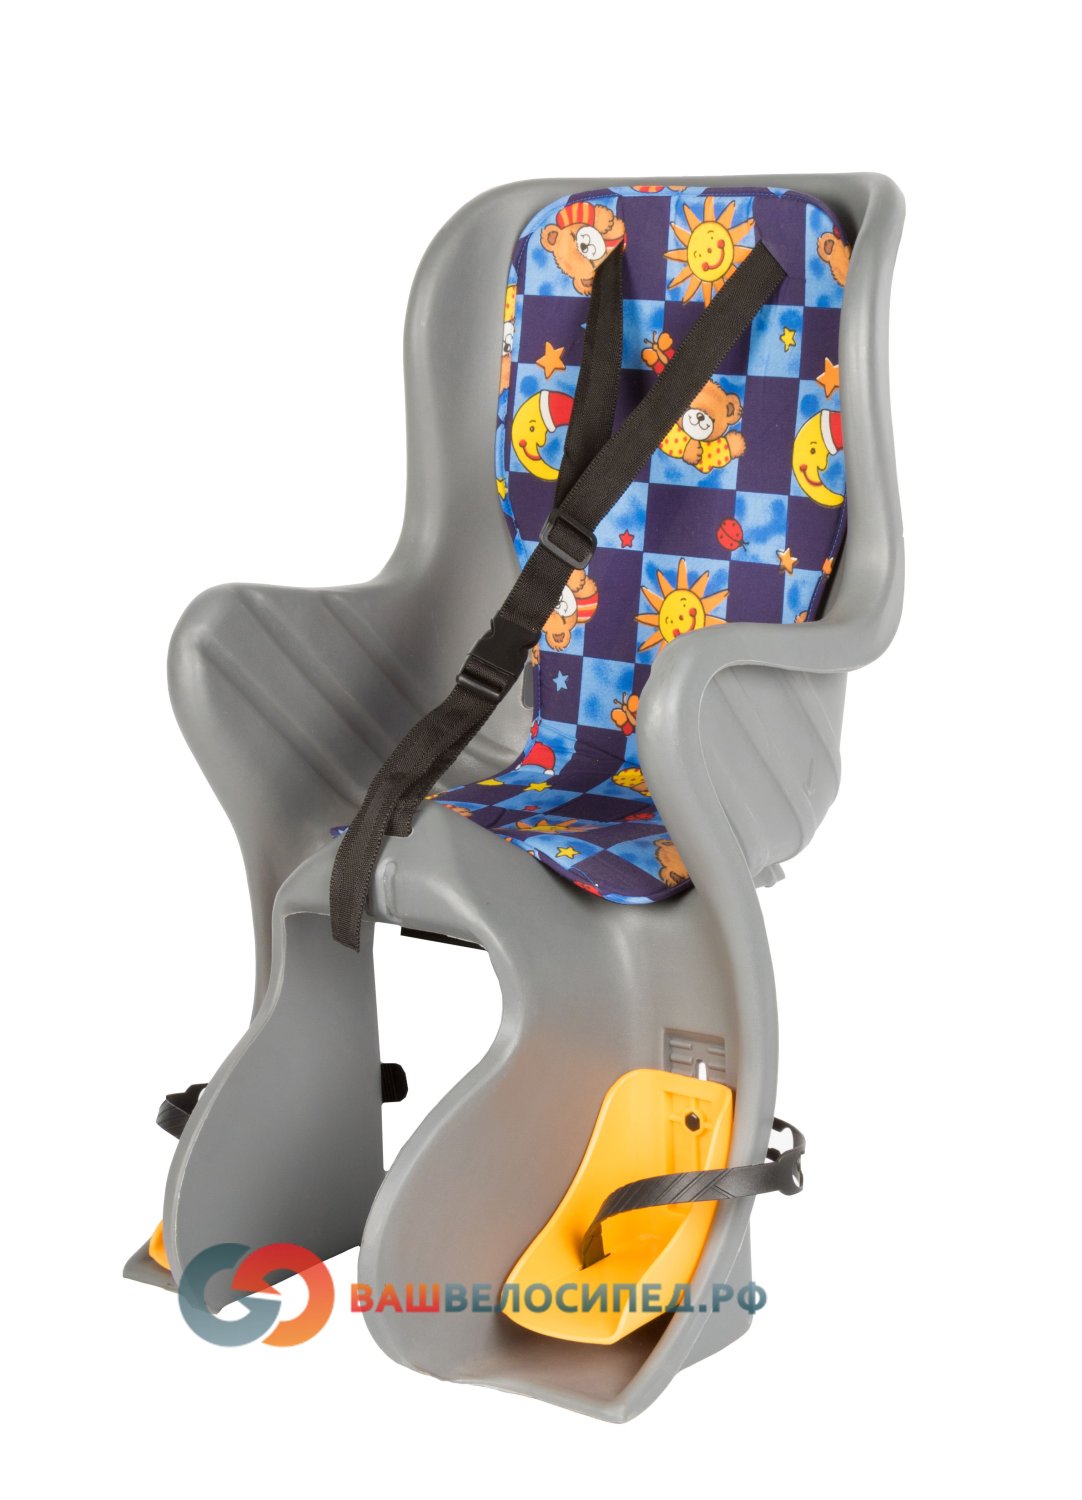 Детское велокресло на багажник SF-928L серое до 7 лет/22кг детское велокресло hamax 2017 zenith relax w carrier adapter на багажник серо вкладыш до 22 кг 553061